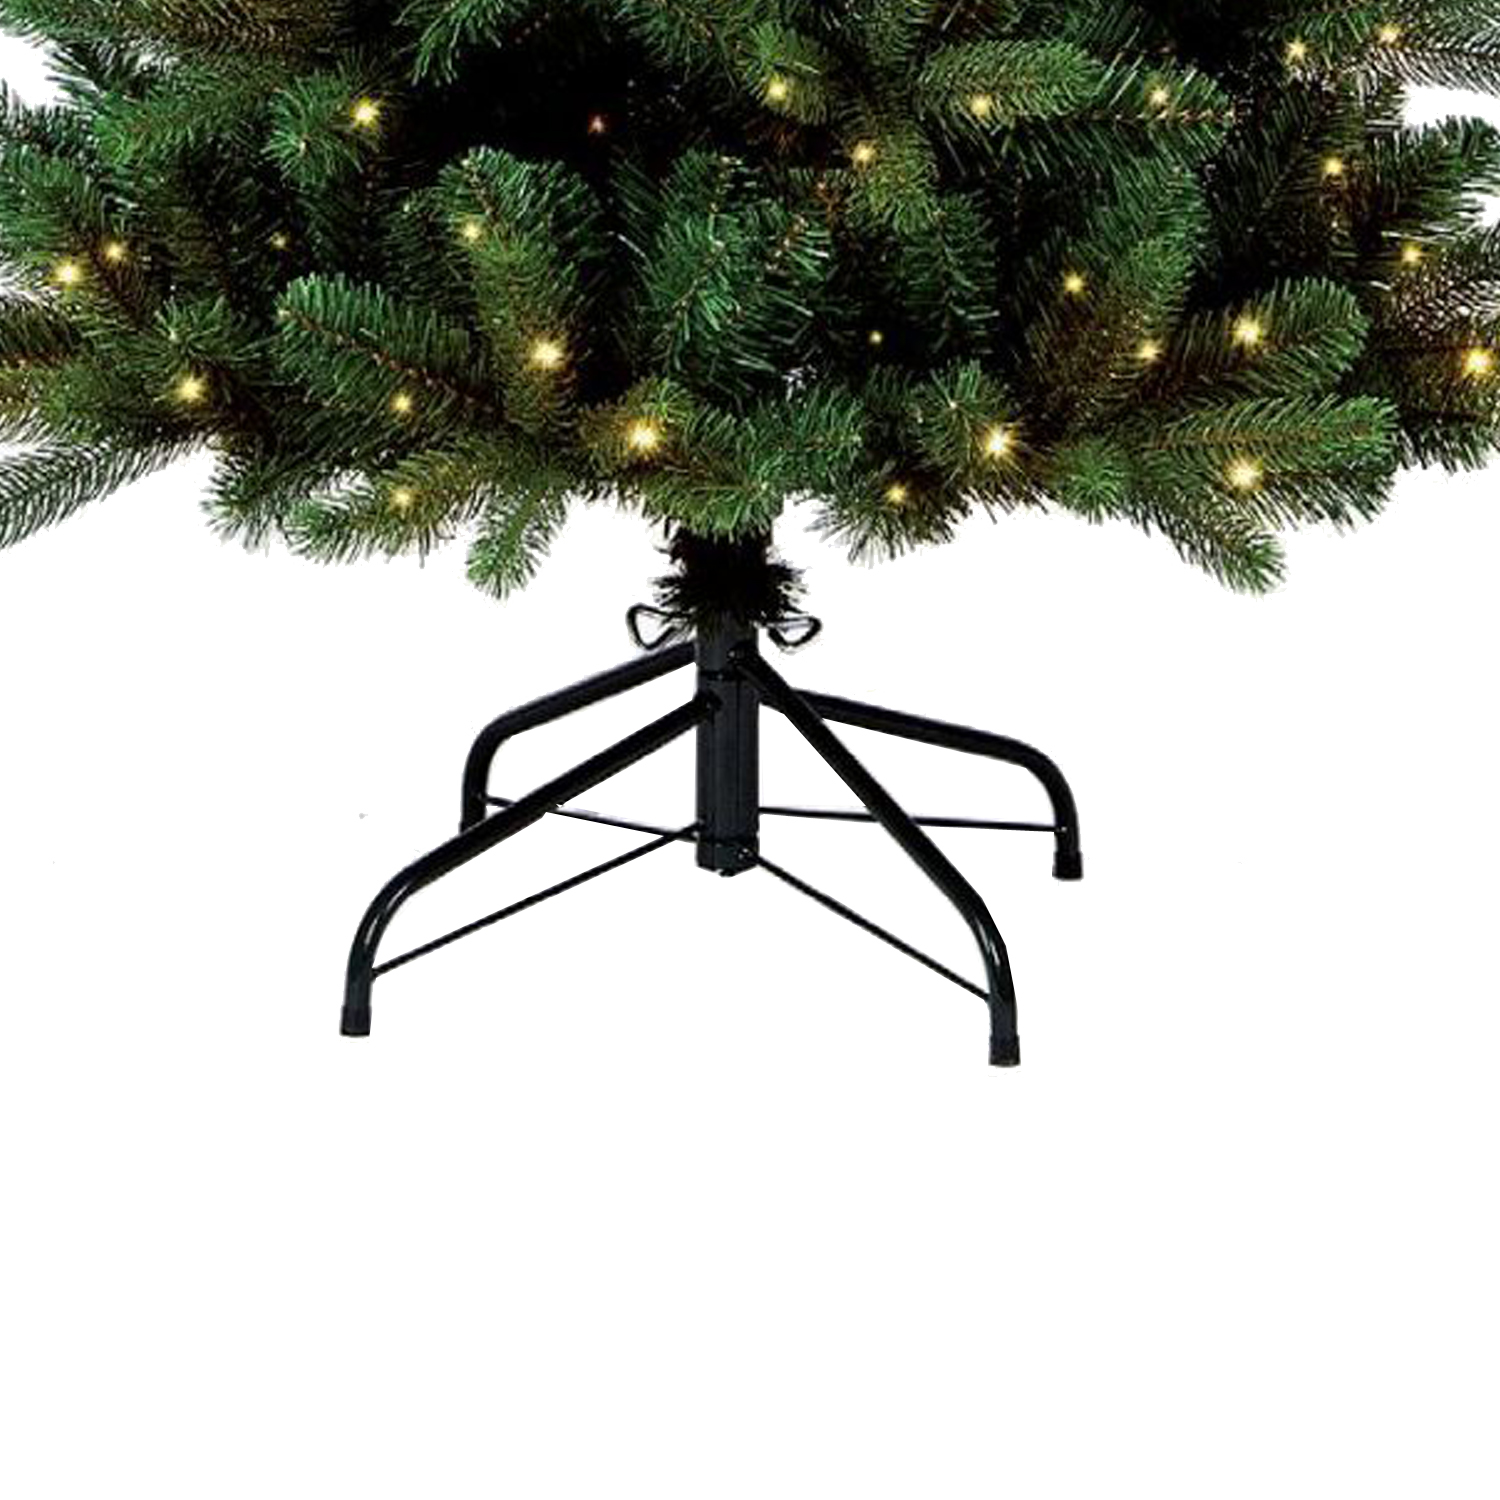 Sluipmoordenaar Fonetiek Discipline kerstboom inclusief led lampjes en voet 210cm (kunst) - David van Schie